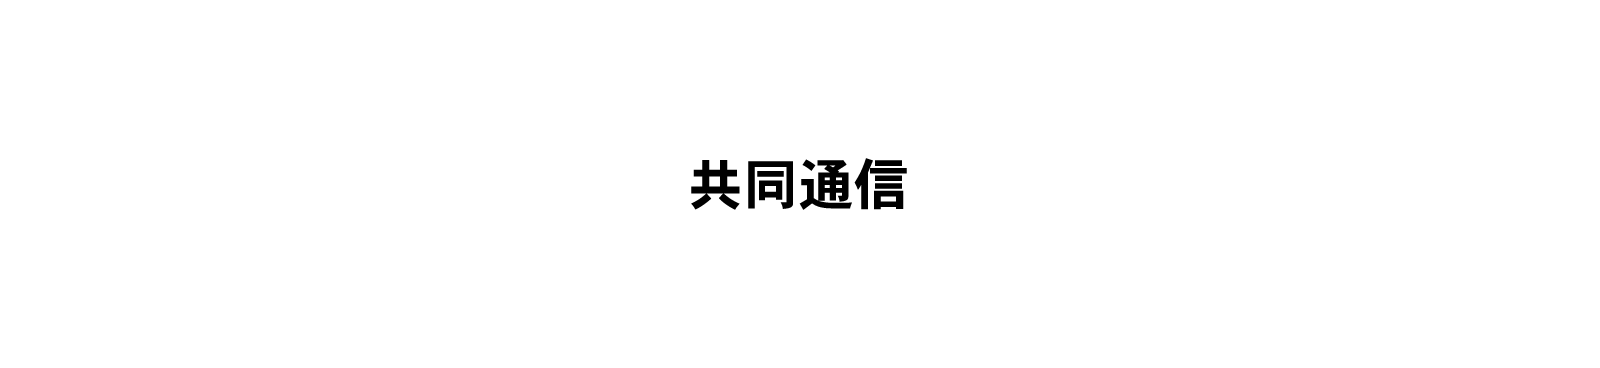 ｢四百年遠忌記念特別展　大名茶人　織田有楽斎｣  開催